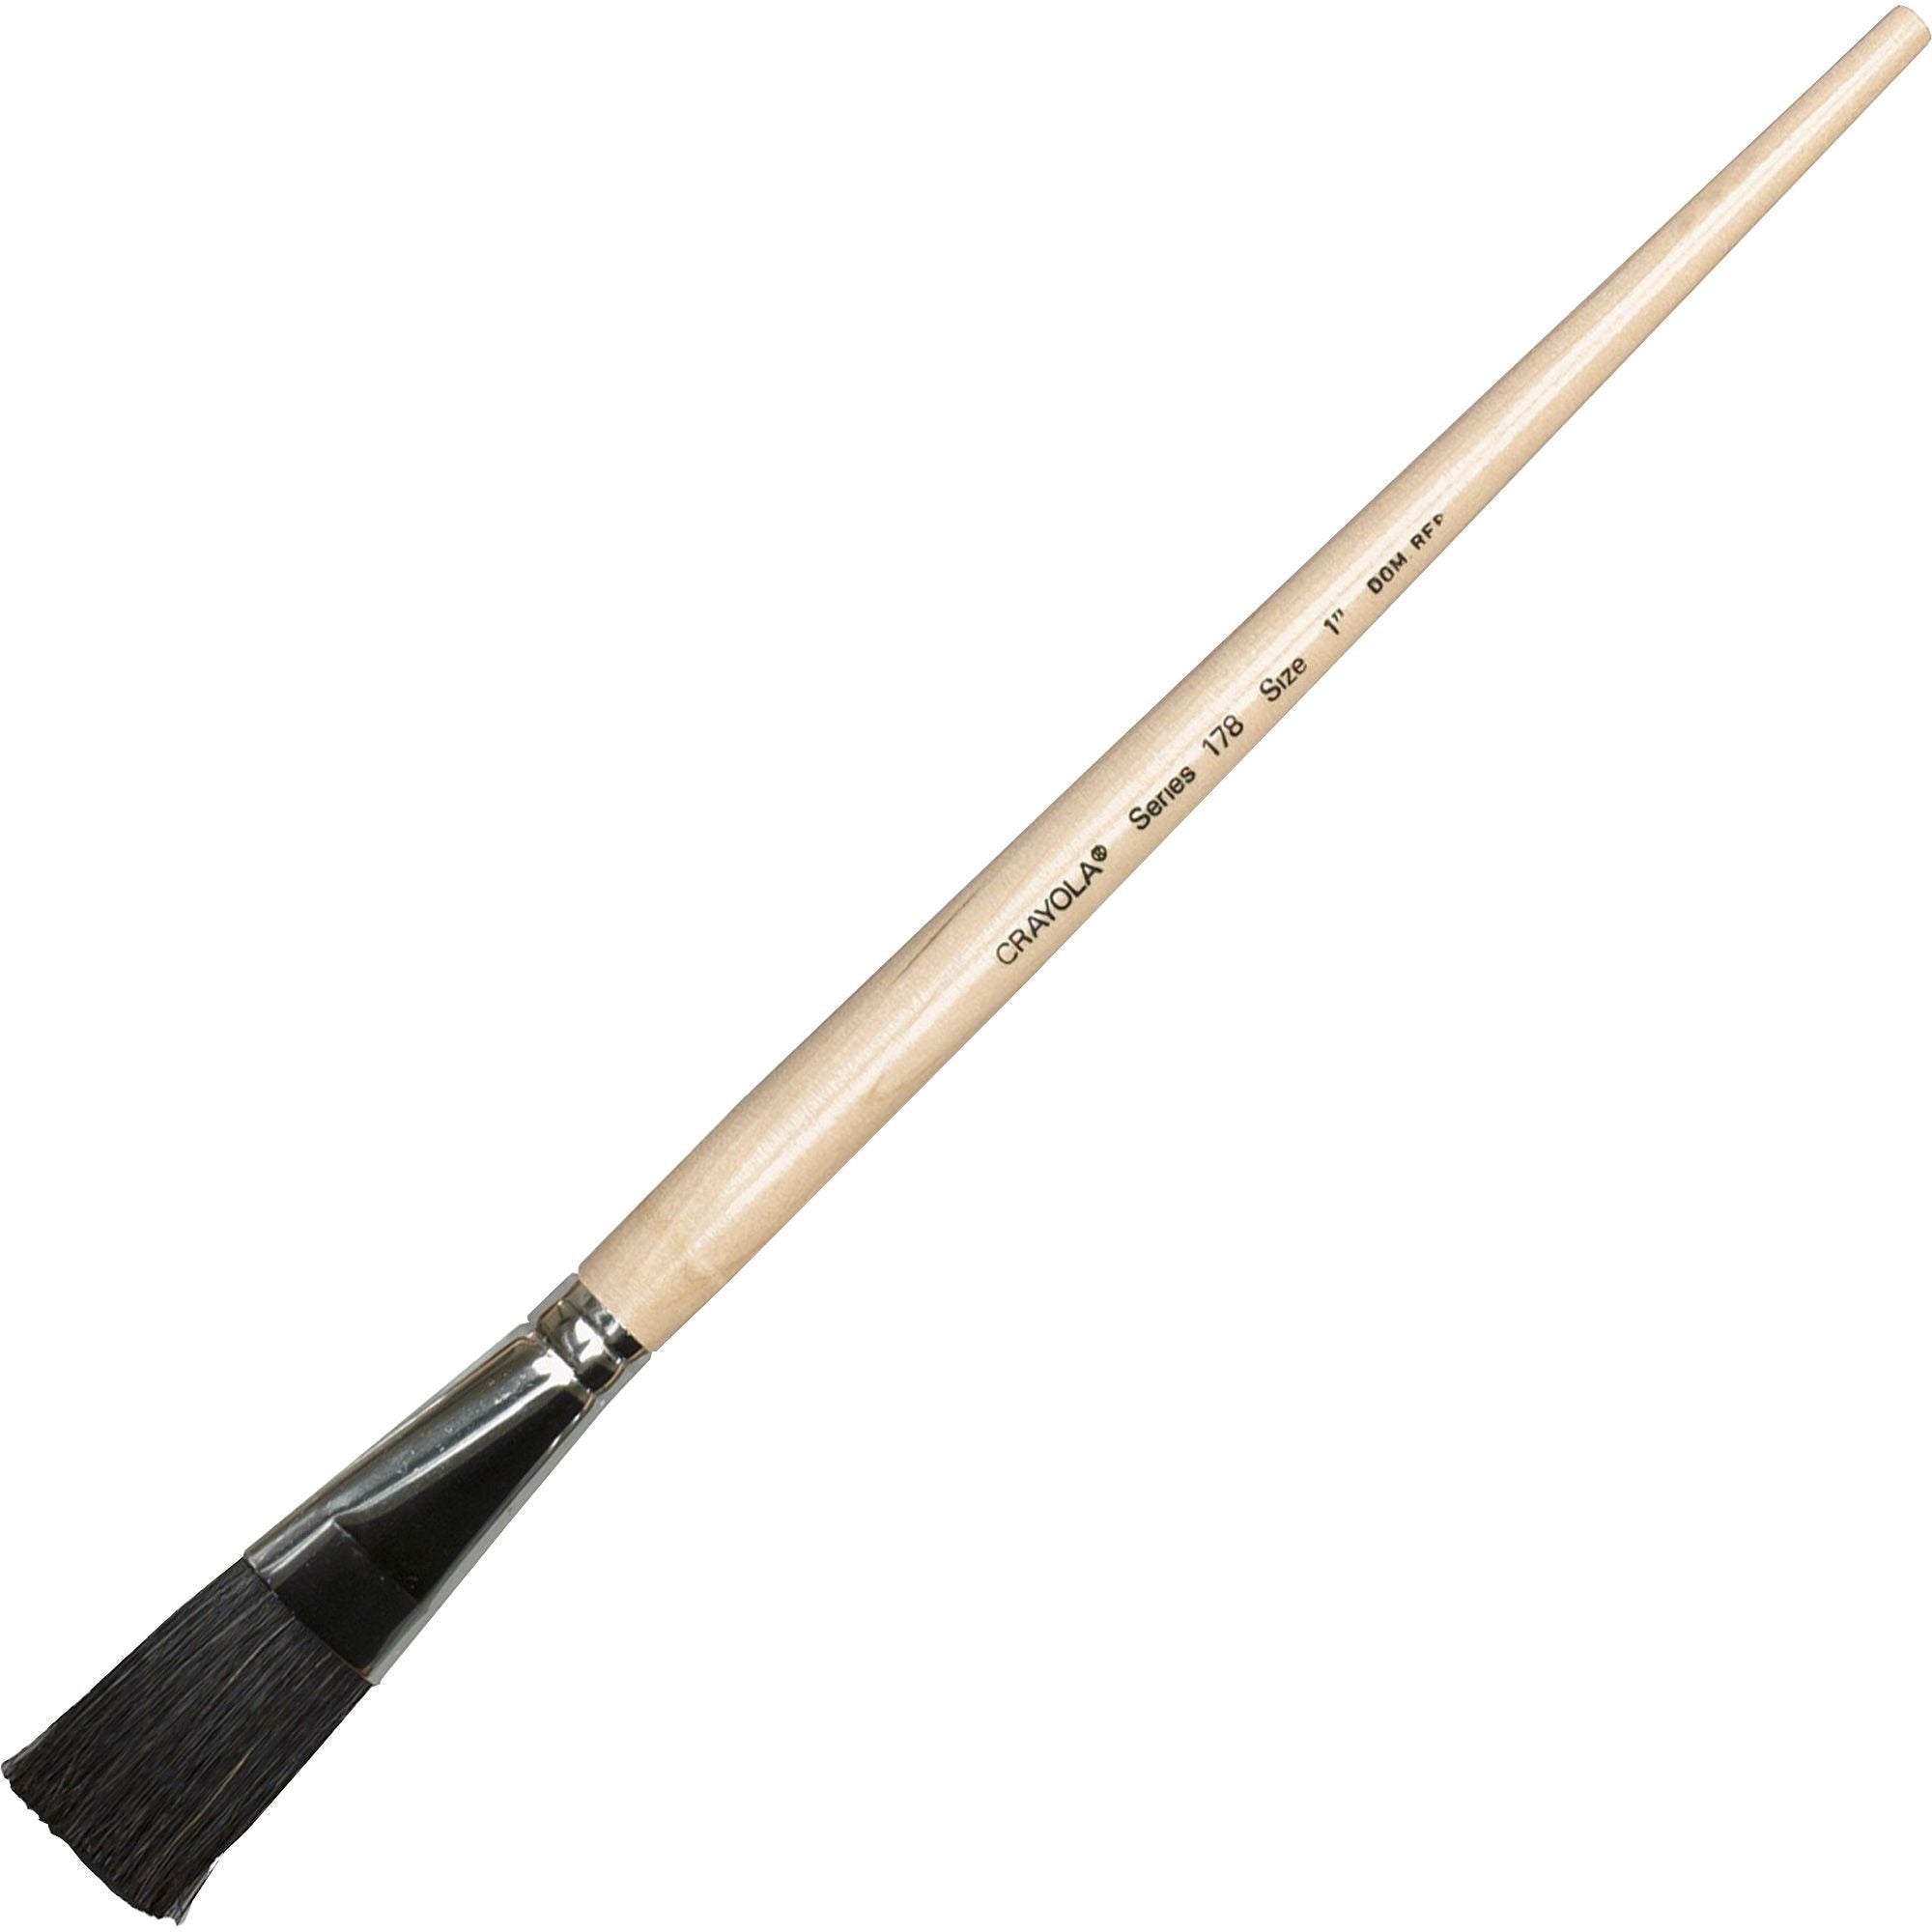 Crayola No. 178 Nylon Easel Brush - 4 Brush(es) - No. 178 - 1" Wood - Aluminum Ferrule